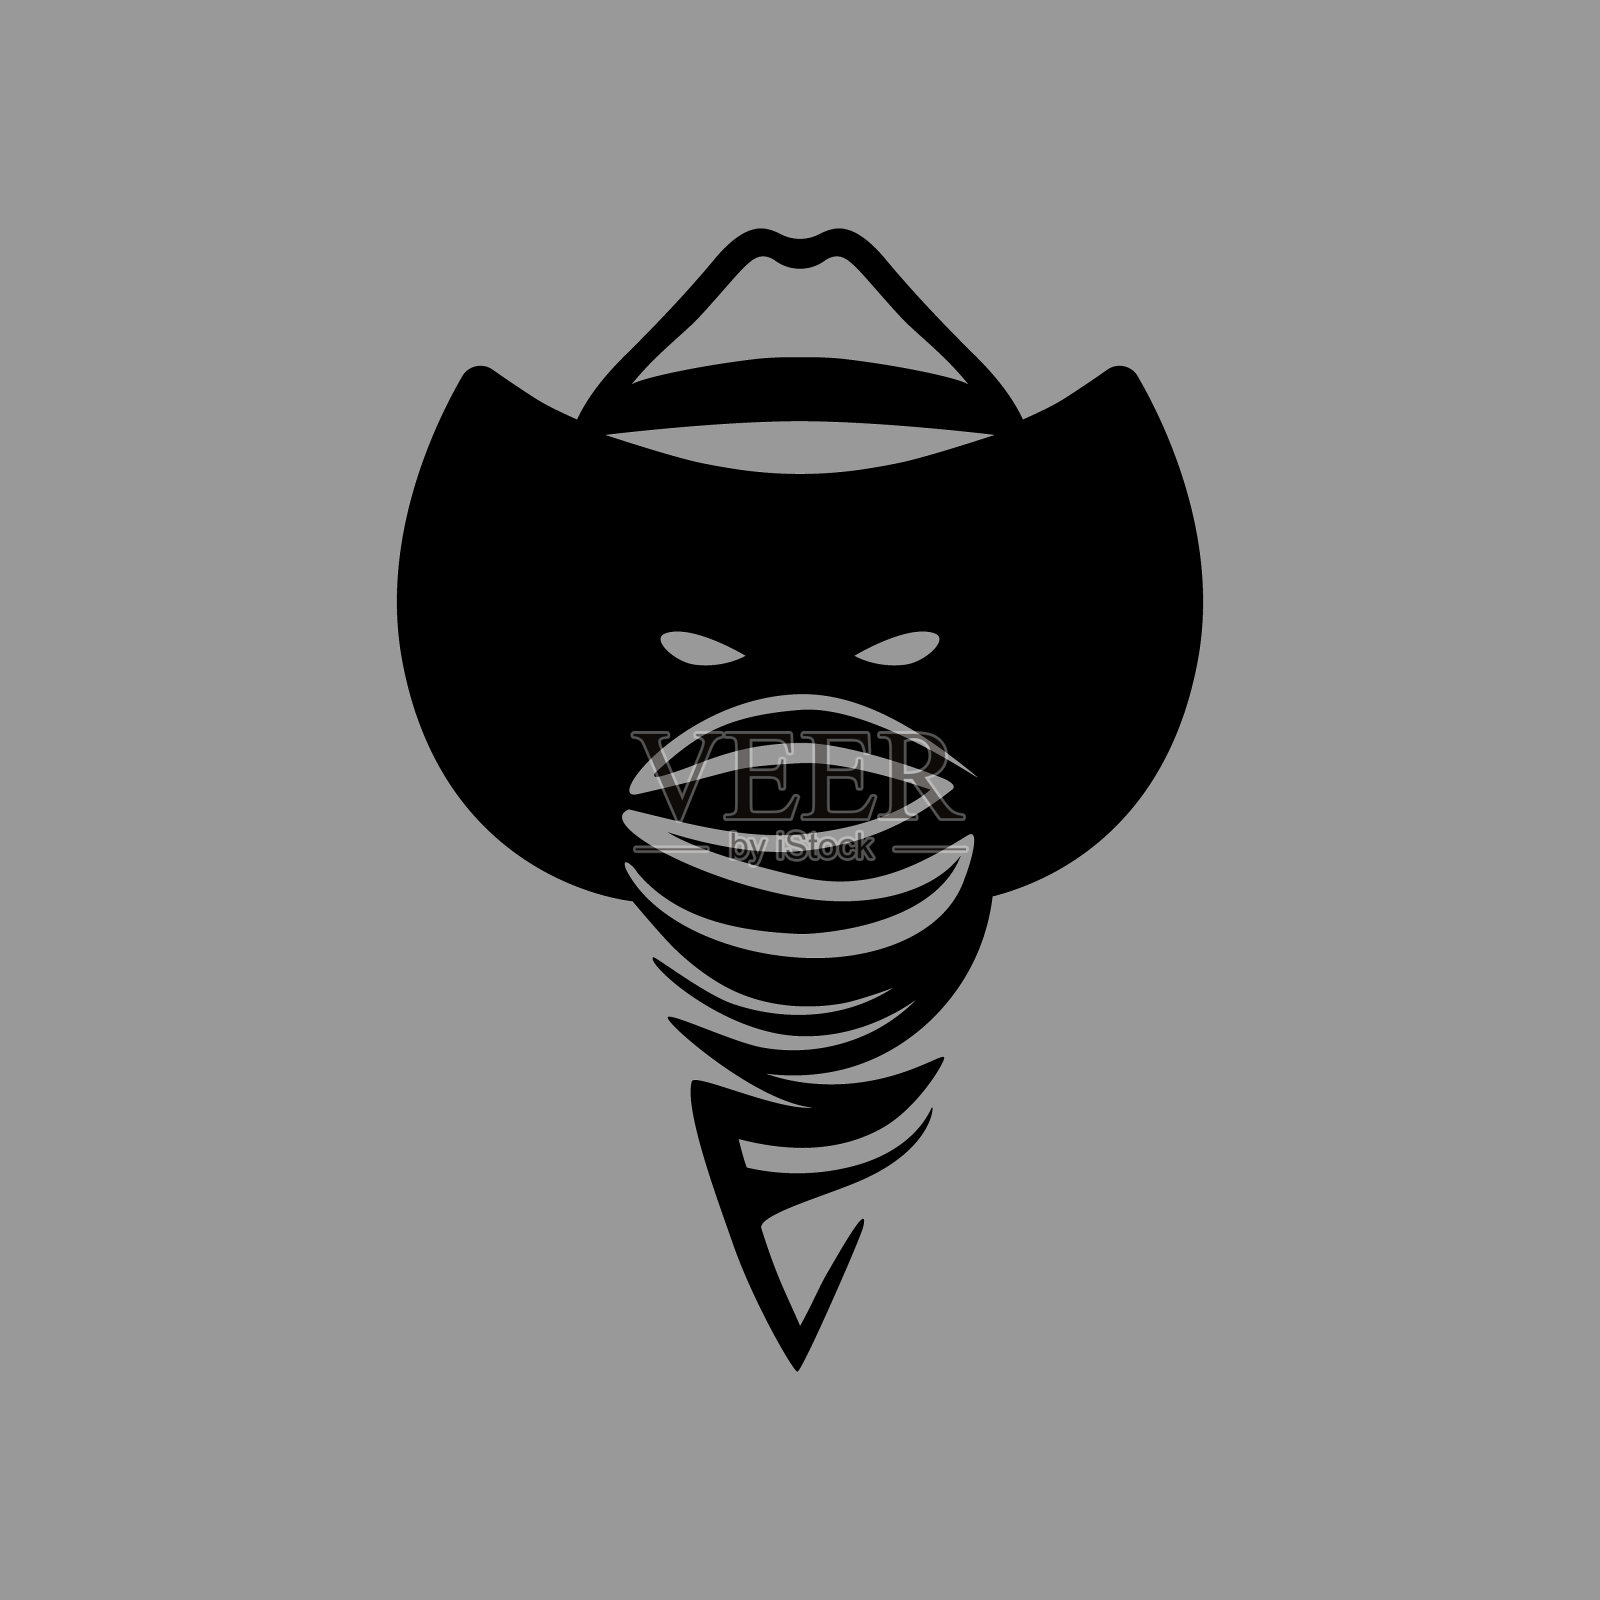 牛仔亡命之徒的头标志在灰色的背景设计元素图片